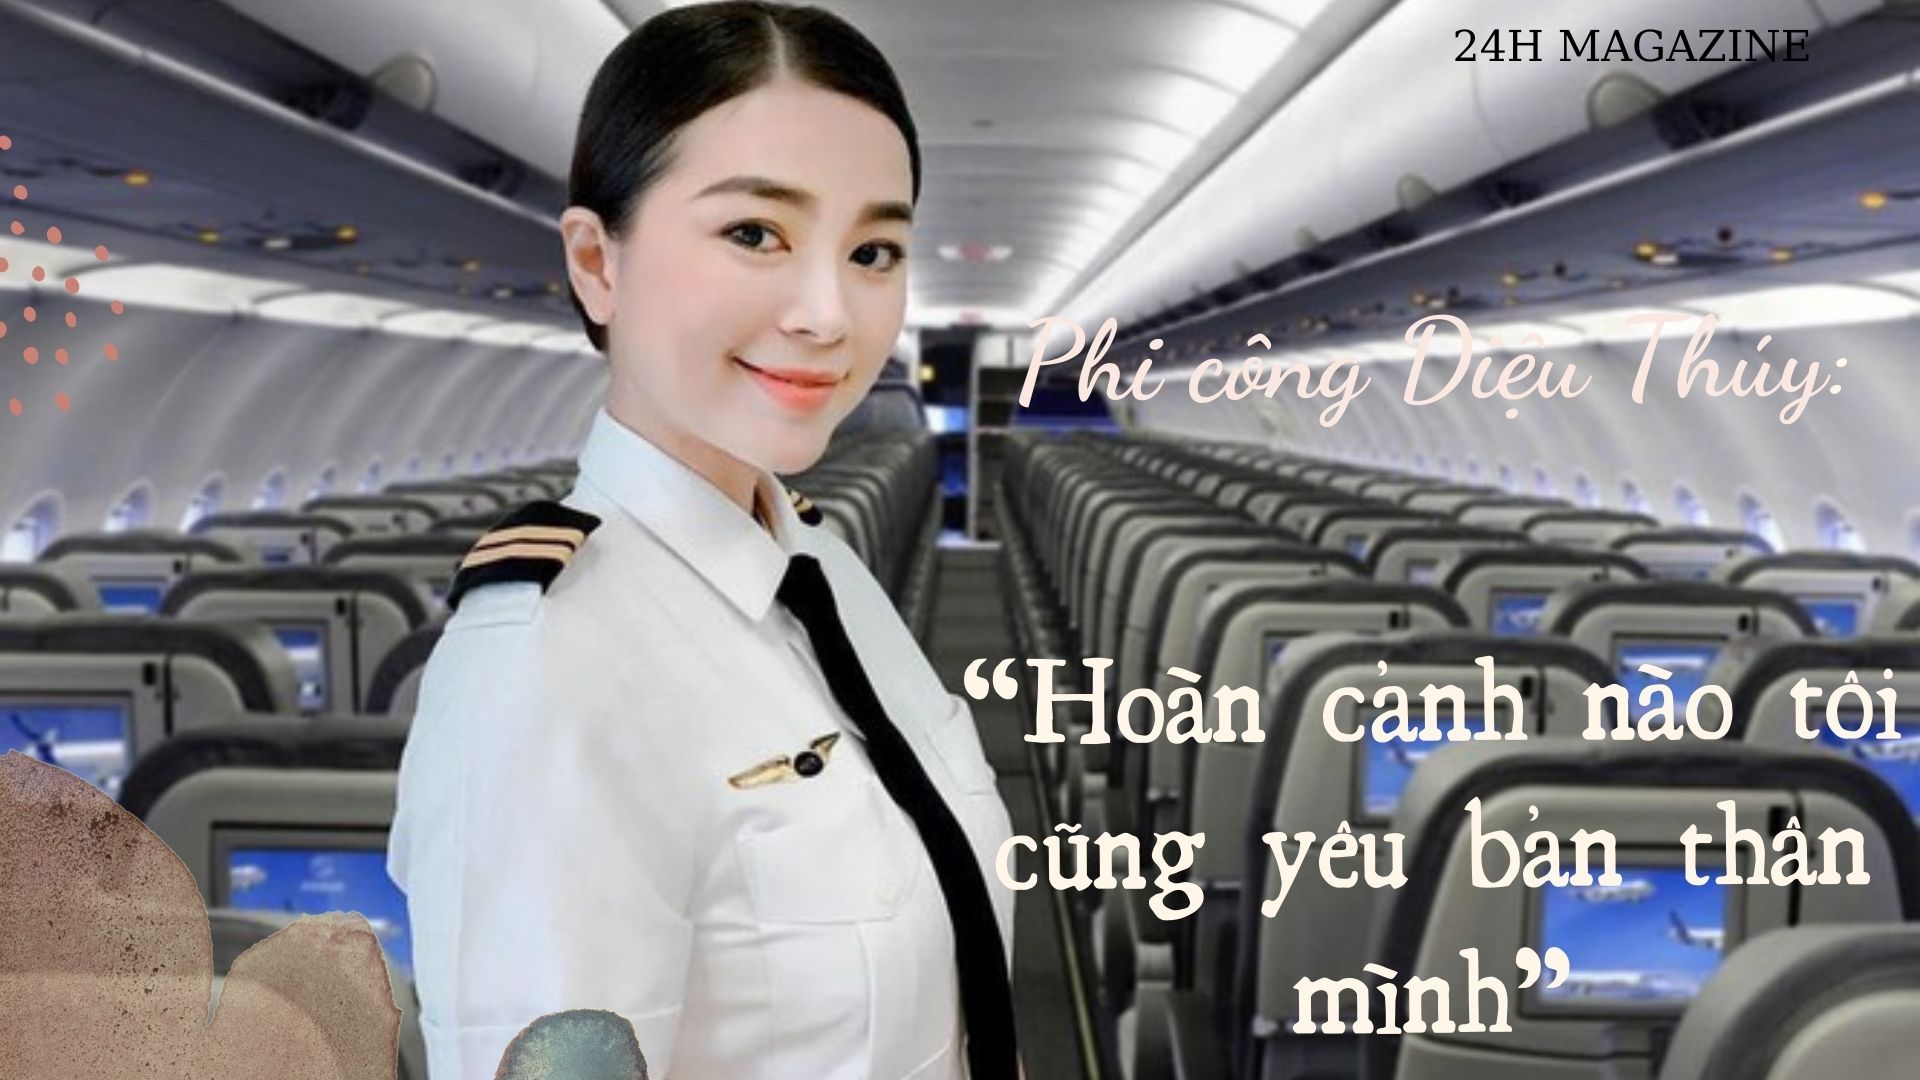 Nữ phi công xinh đẹp nhất Việt Nam: &#34;Hoàn cảnh nào tôi cũng yêu bản thân&#34; - 1